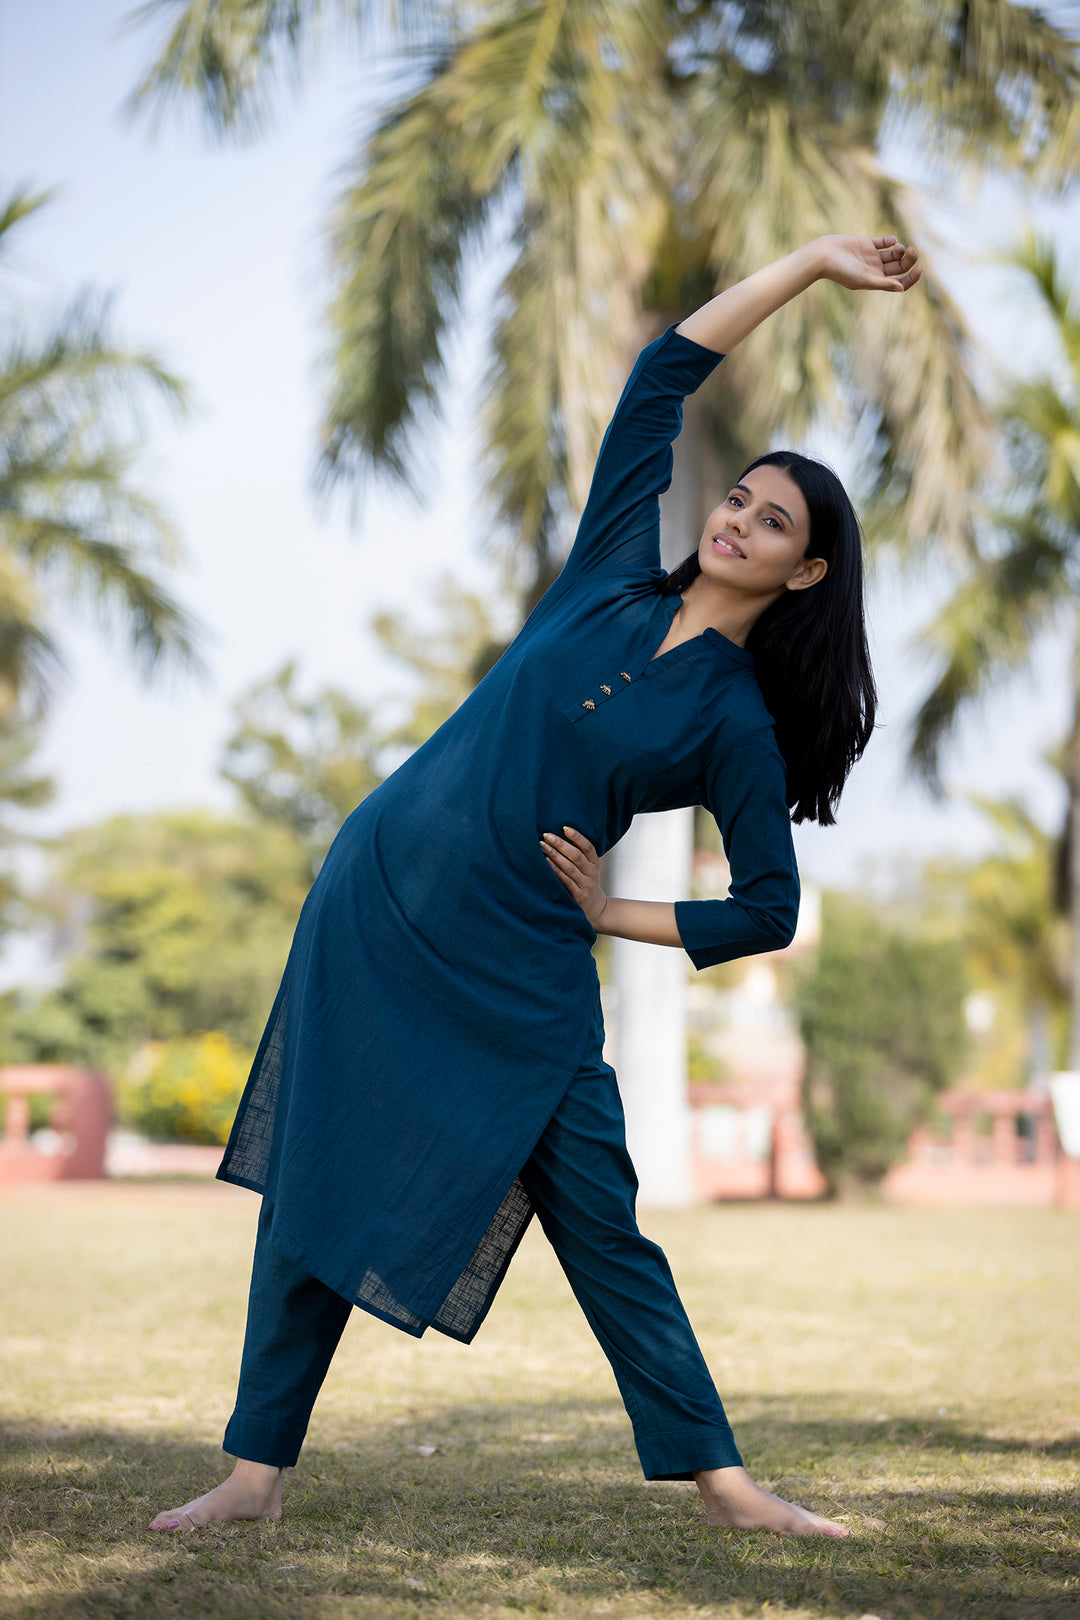 Buy Navy Blue Cotton Full Sleeves Kurta | Best Casual Wear Online for Women